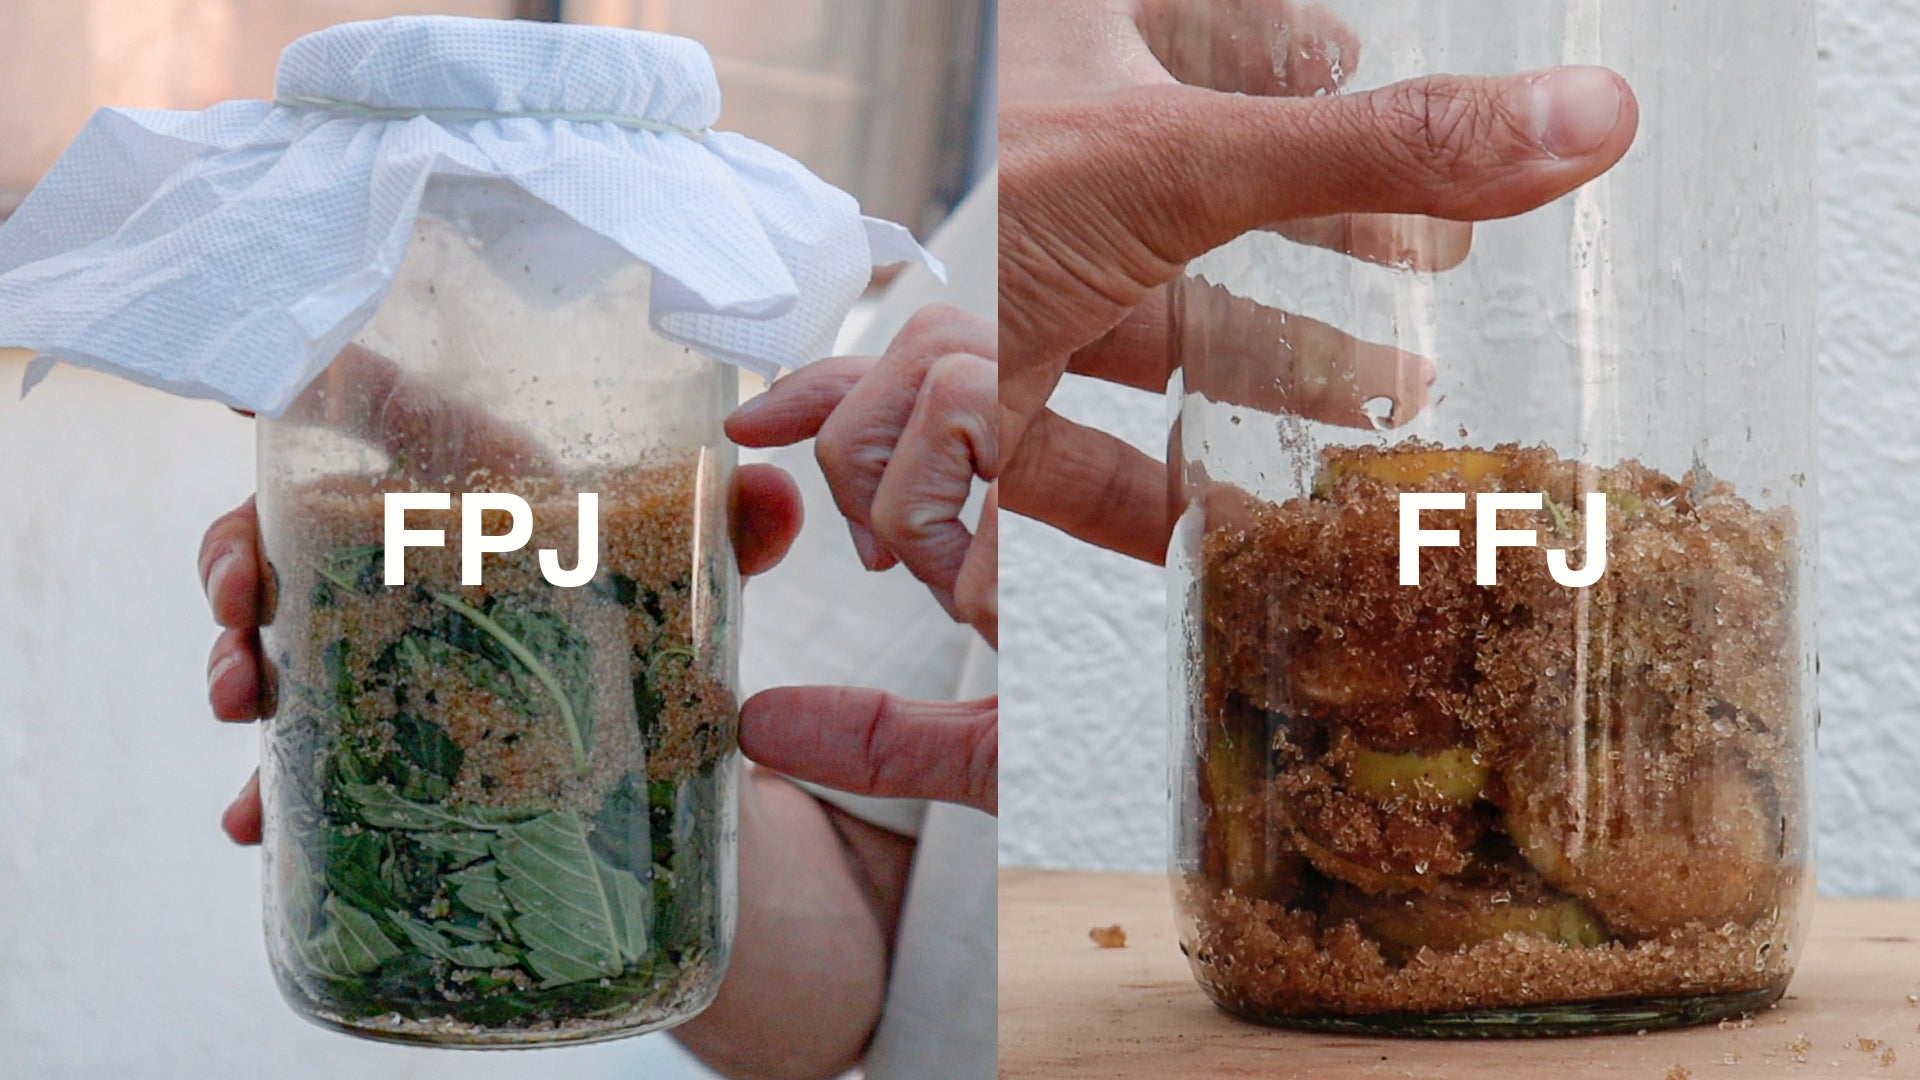 Frascos donde se está preparando Jugo fermentado de plantas (FPJ) y jugo fermentado de frutas (FFJ)